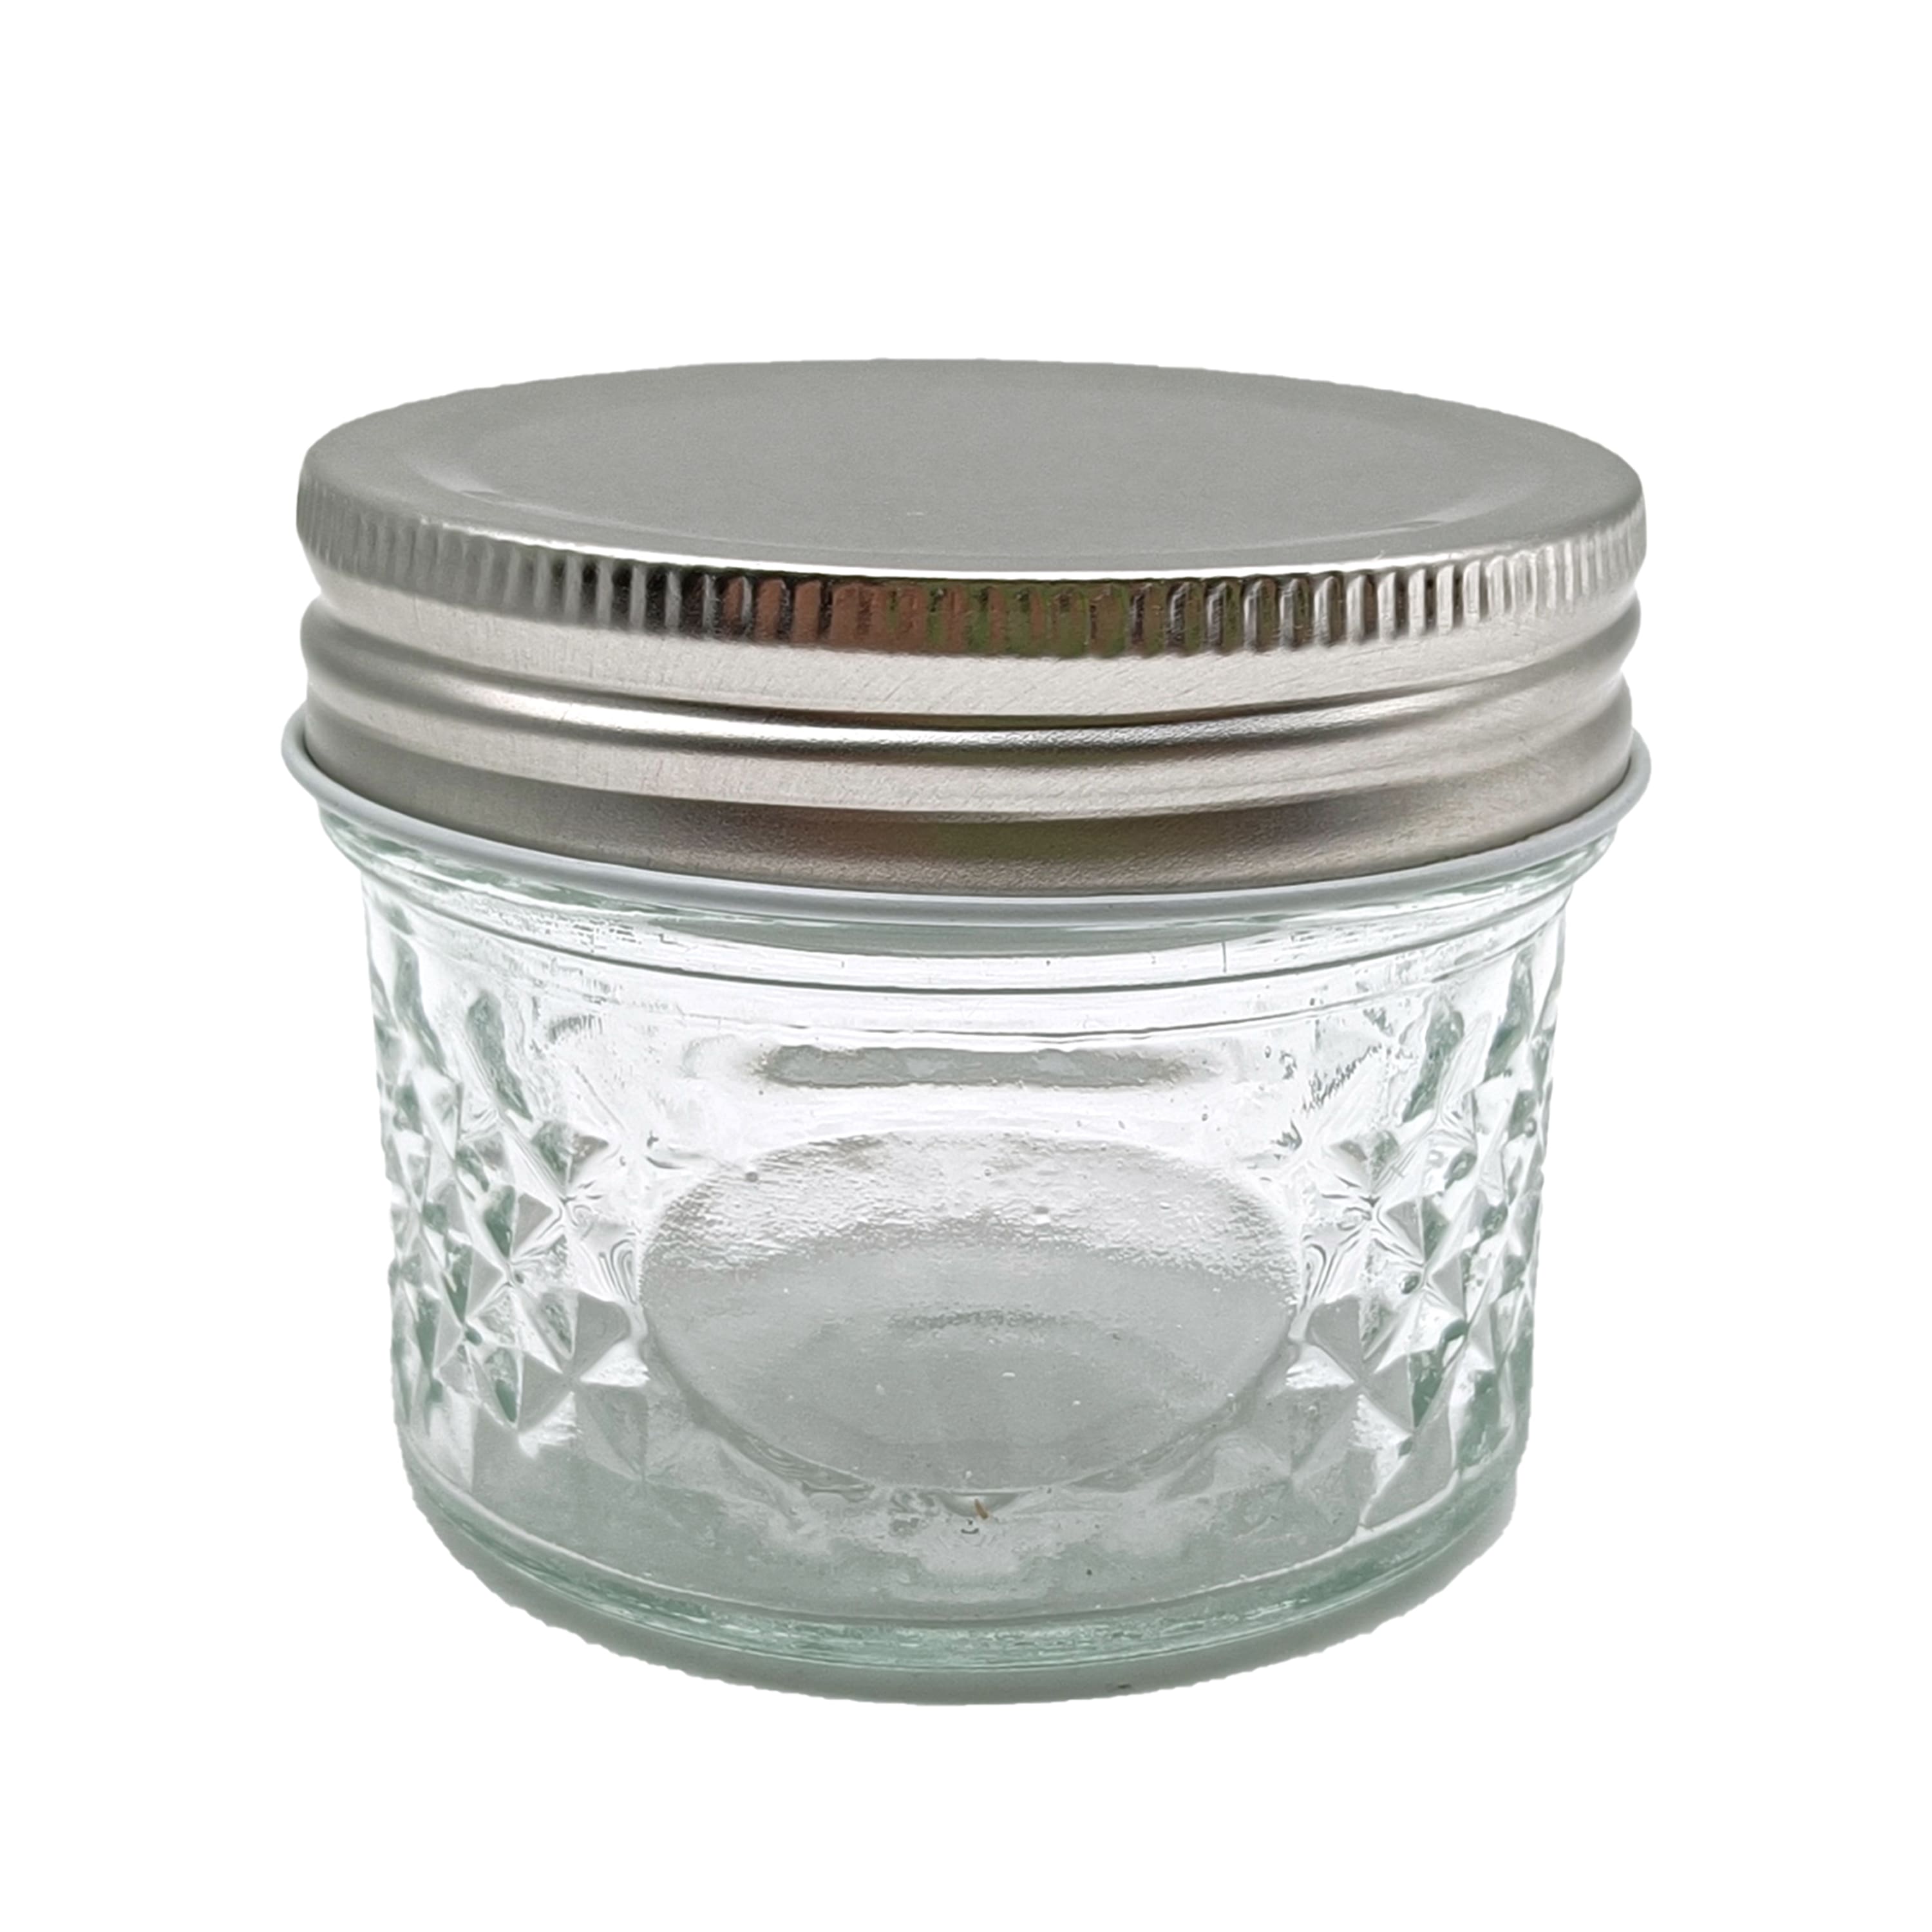 16oz. Glass Jar by Ashland®, 12ct.